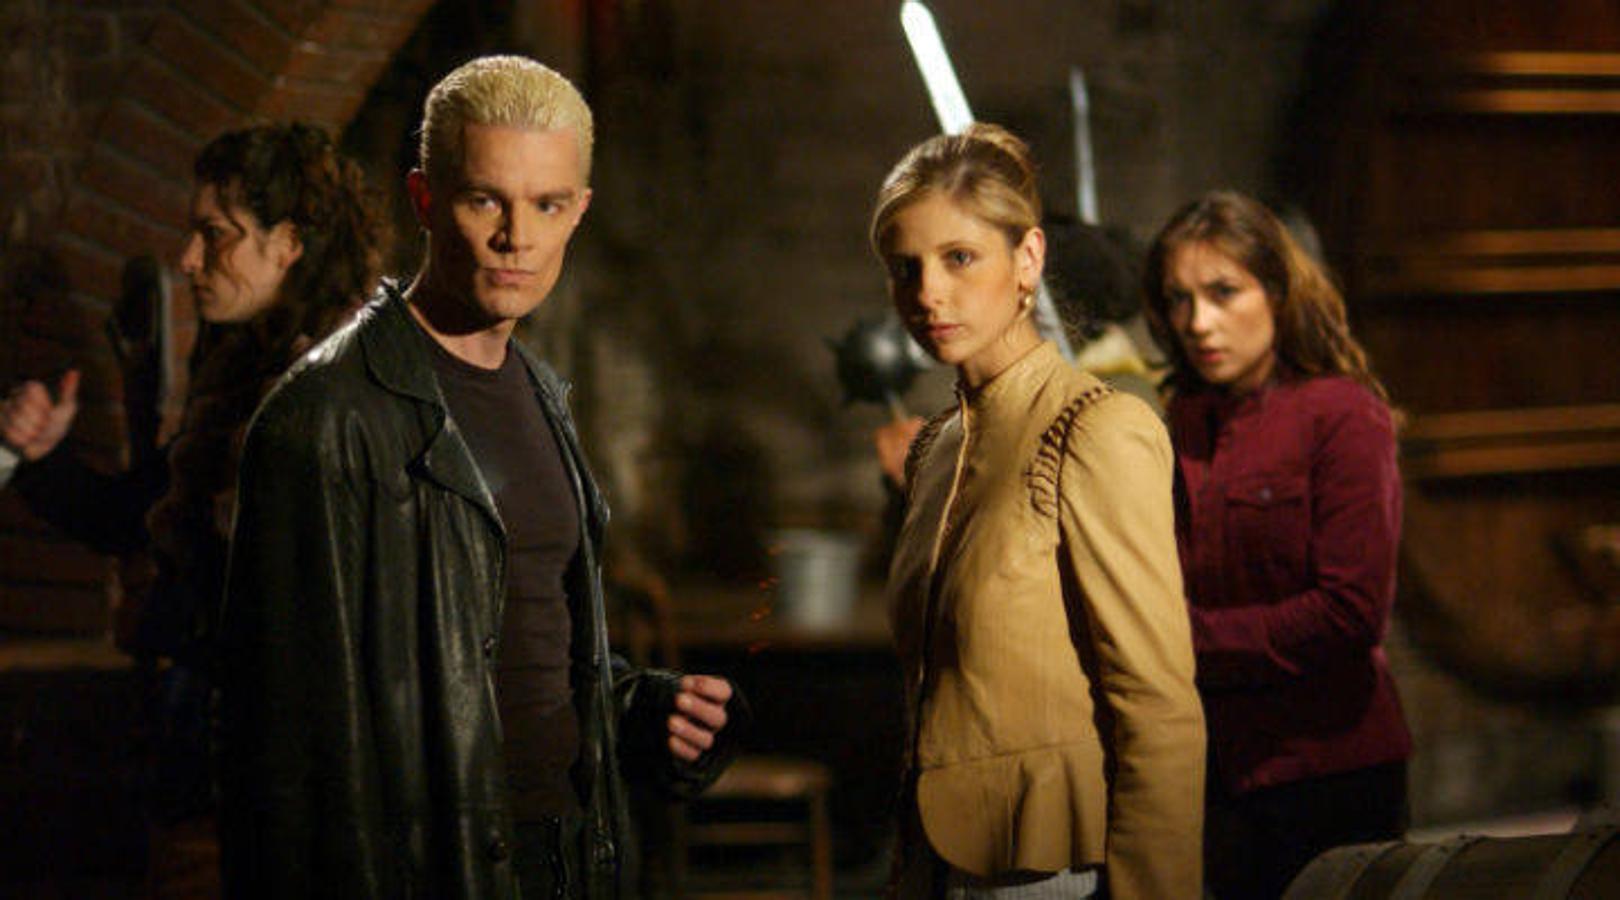 «Buffy cazavampiros». «Buffy the Vampire Slayer» es una serie de televisión estadounidense que se estrenó en 1997 y transmitida hasta el 20 de mayo de 2003. Esta serie se desarrolla a partir de los sucesos ocurridos en la película del mismo nombre de 1992, escrita y producida por Joss Whedon, quien posteriormente también la produciría para la televisión. El argumento gira en torno a Buffy, una estudiante de secundaria - posteriormente universitaria - que es escogida por el destino para ser la Cazadora y luchar contra las fuerzas del mal.